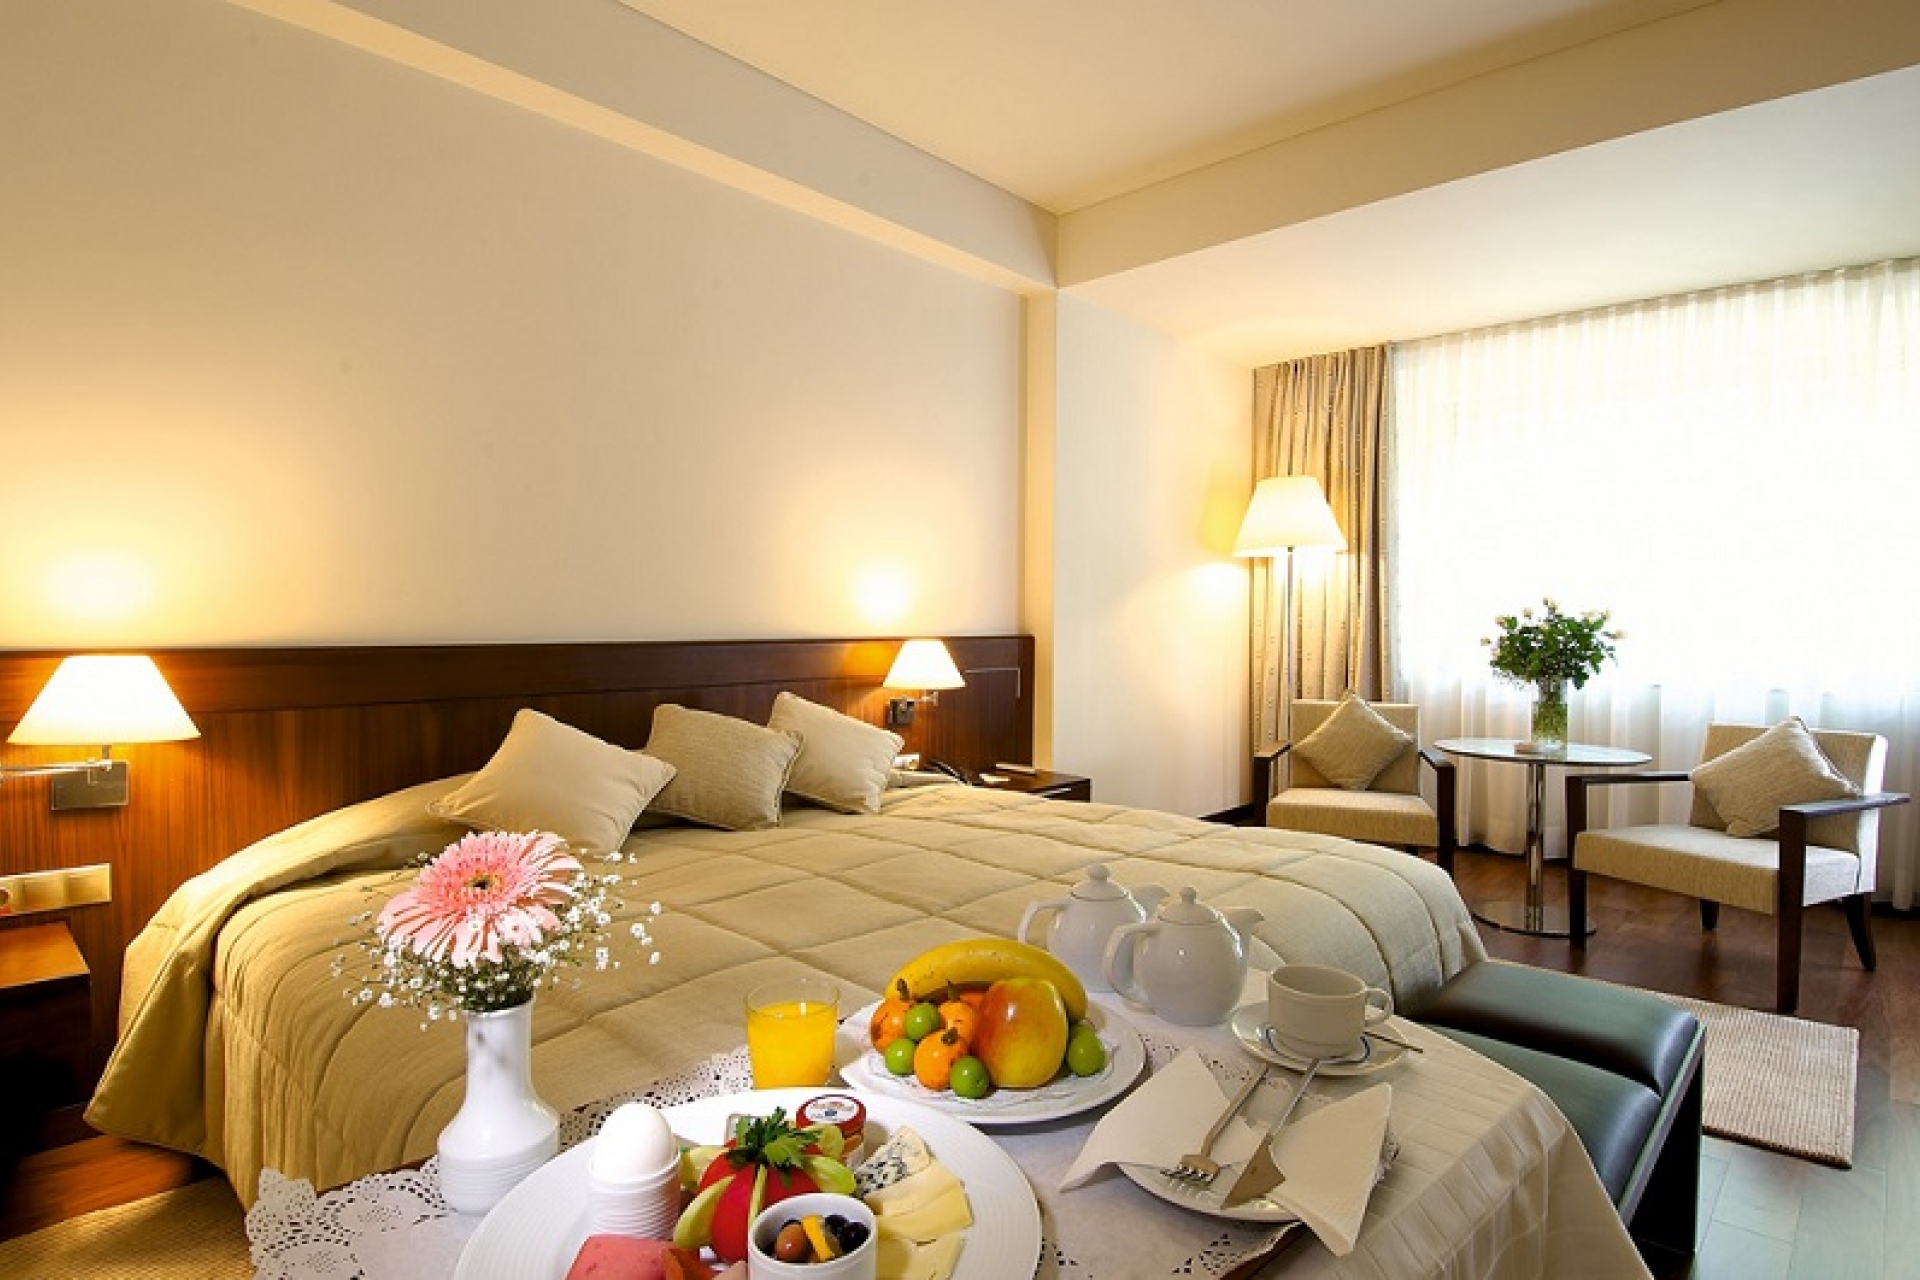 Ontur Hotel İzmir